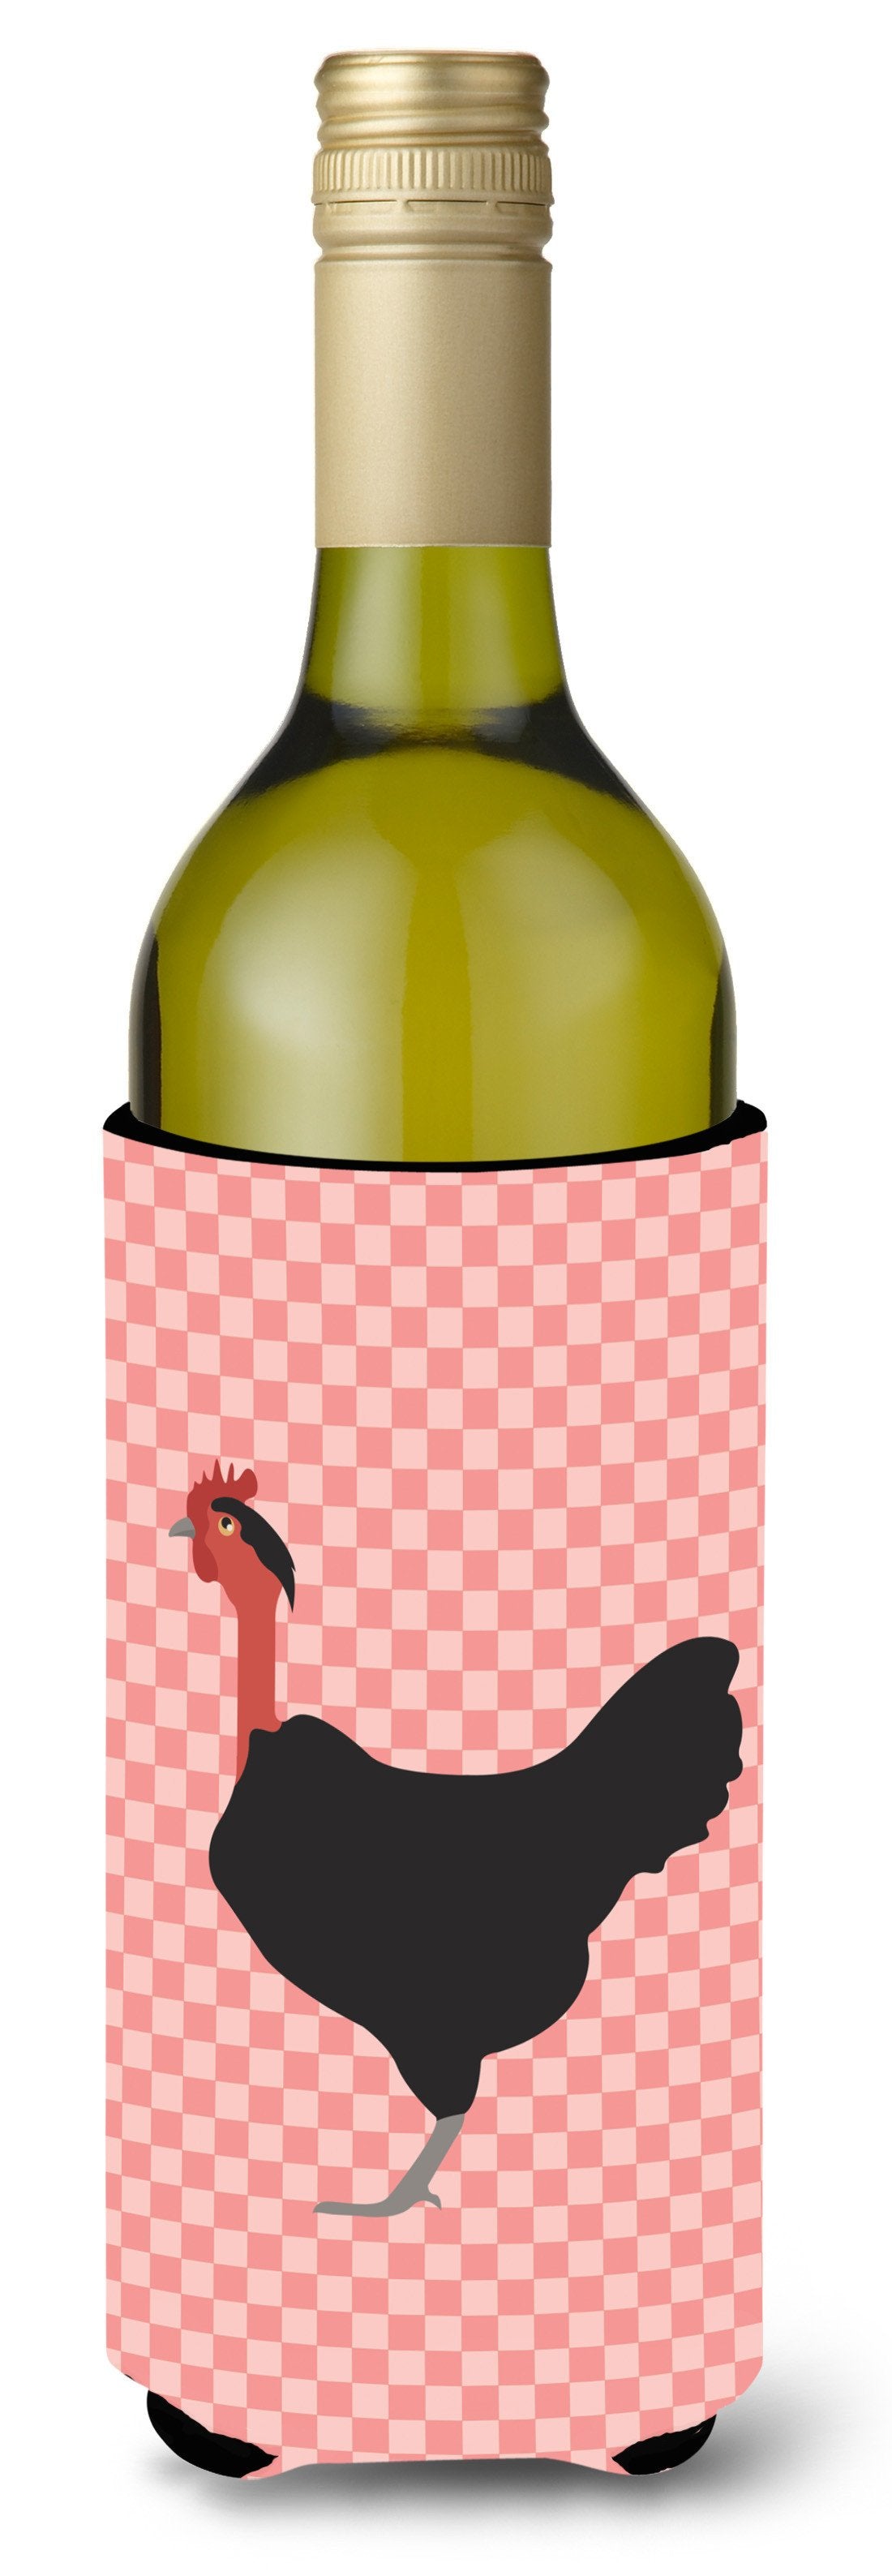 Naked Neck Chicken Pink Check Wine Bottle Beverge Insulator Hugger BB7839LITERK by Caroline's Treasures